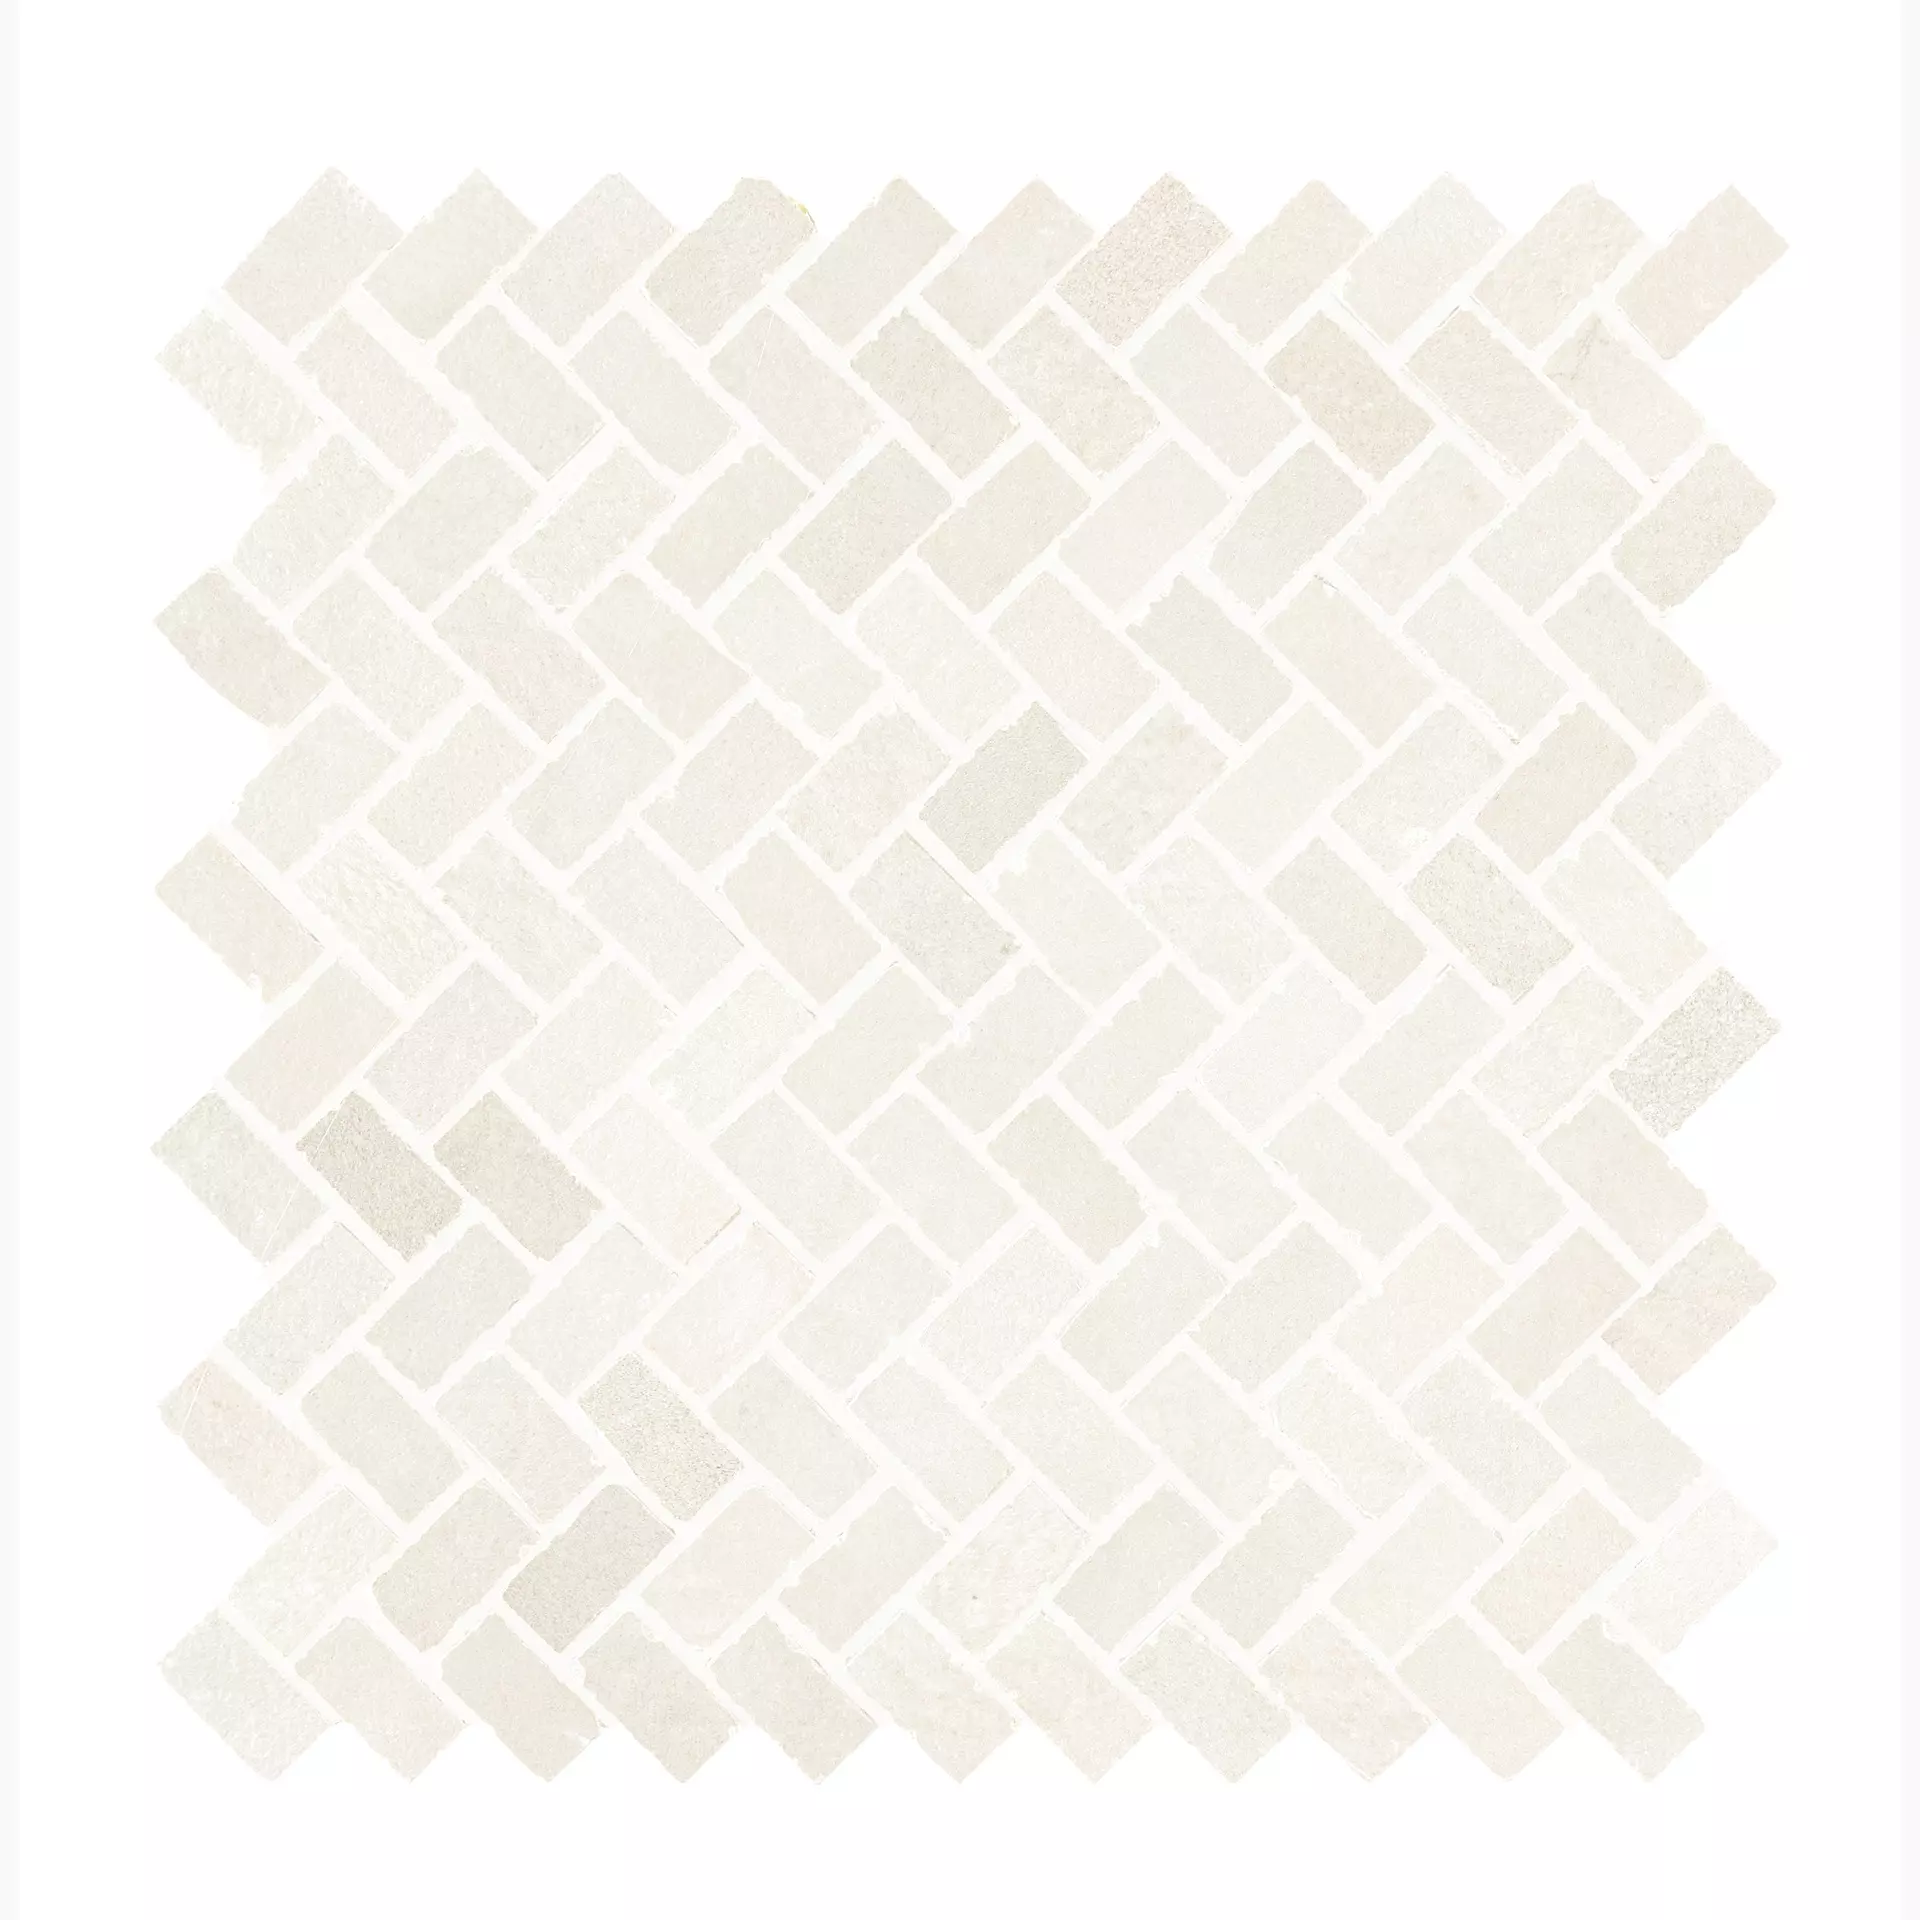 Ragno Stratford White Naturale – Matt Mosaik R93A 30x30cm 10mm